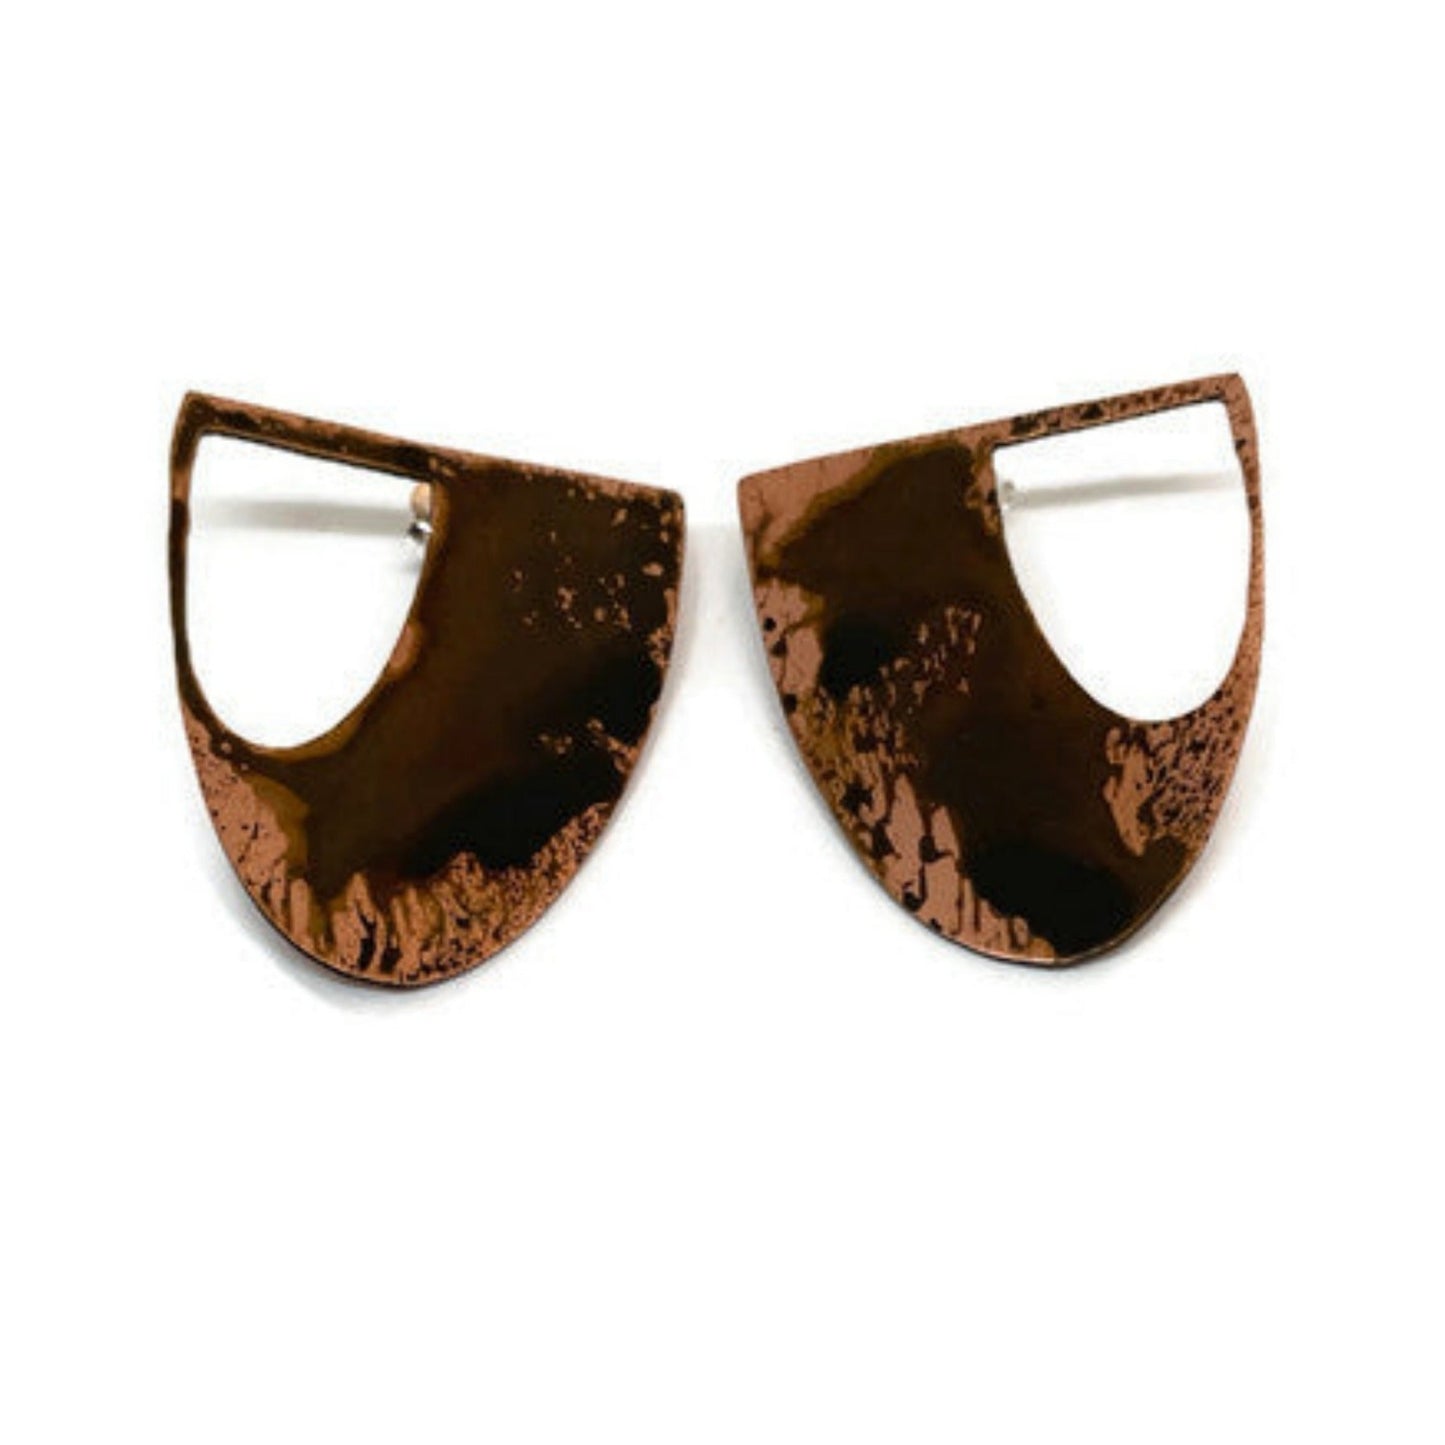 Oxidised copper Earrings | Rose - Black Drops Earrings  - CURIUDO